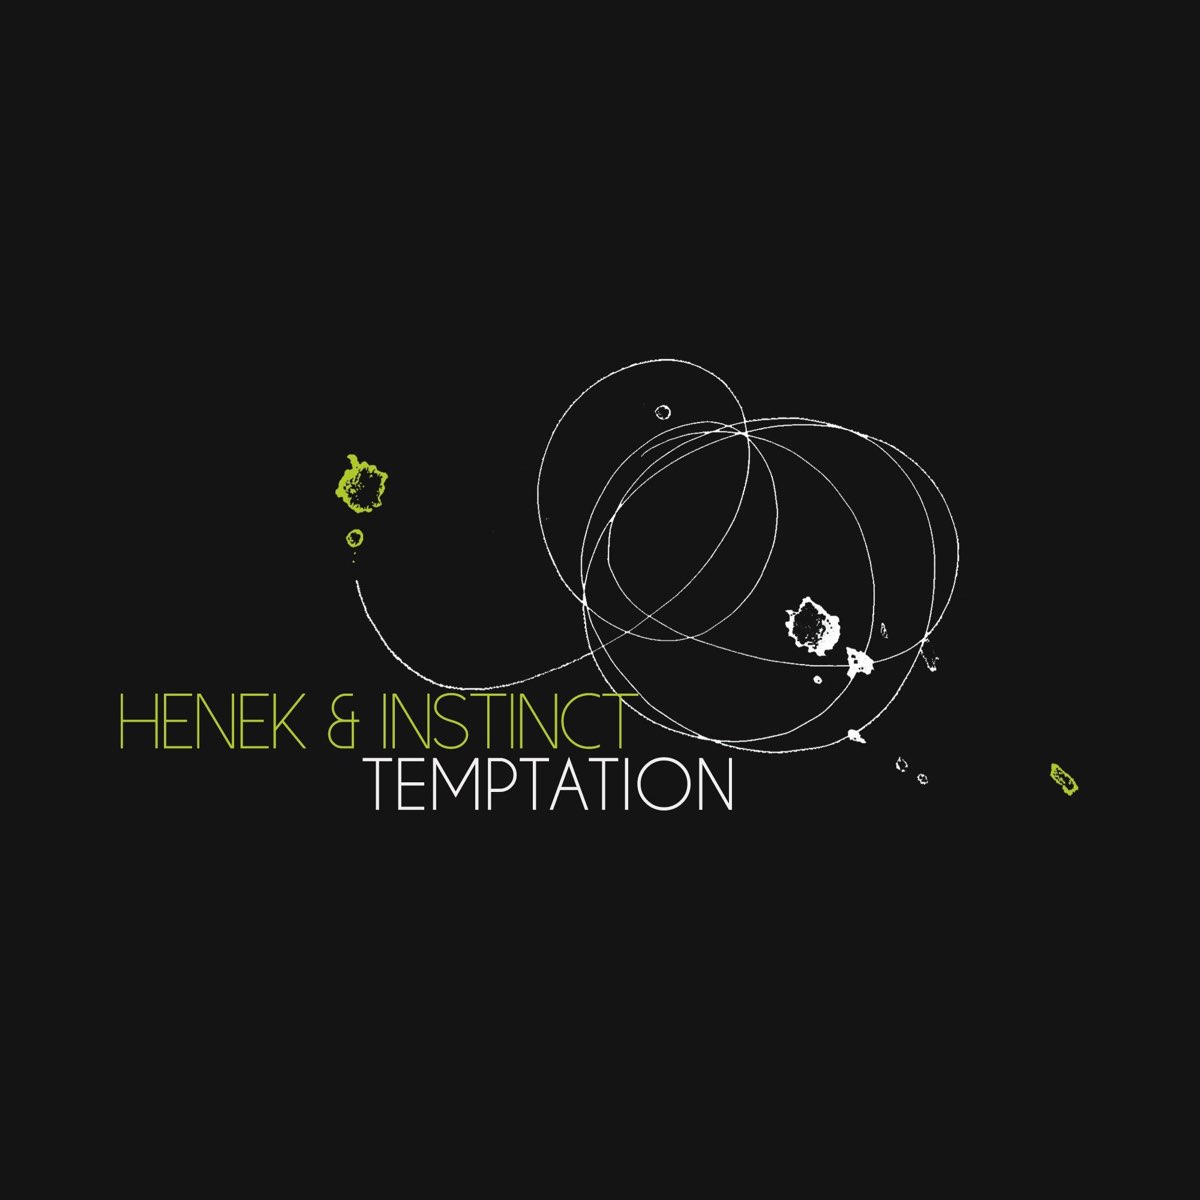 Хенек. Txt Temptation альбом. Txt album Temptation. Piem ft Mizbee - Temptation (Original Mix). Слушать искушен